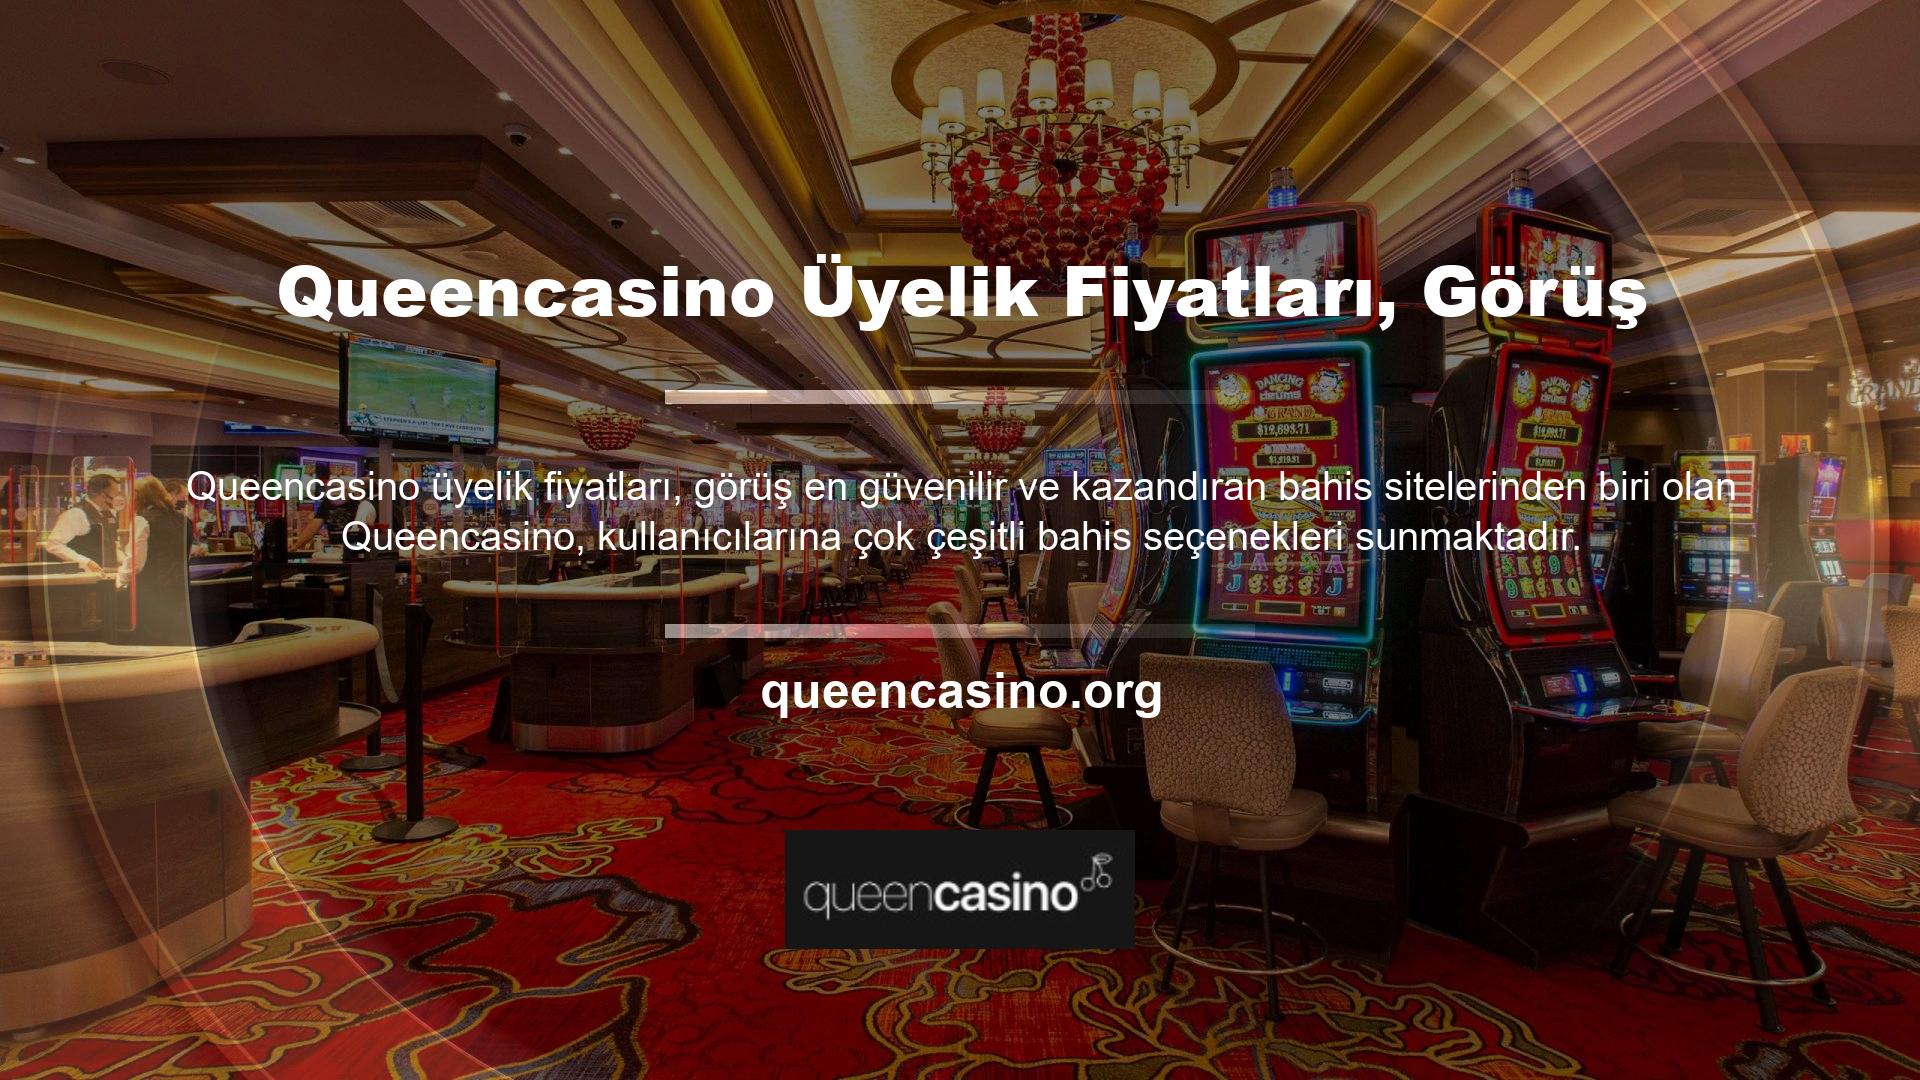 Queencasino üyelik fiyatları, görüş ve şikayetler Bahis Sitesi Tarafından Üyelere Sunulan Bahis Seçenekleri Şunlardır:• Futbol Turnuvaları  Üyelik Fiyatları, Görüş• Casino Oyunları Bahis Şikayetleri• At Yarışı Bahis ŞikayetleriQueencasino Bahis MemnuniyetiCanlı bahis sitelerinde oyun oynayarak para kazanan birçok casino sever, zaman zaman site ile ilgili sorunlar yaşayabilir